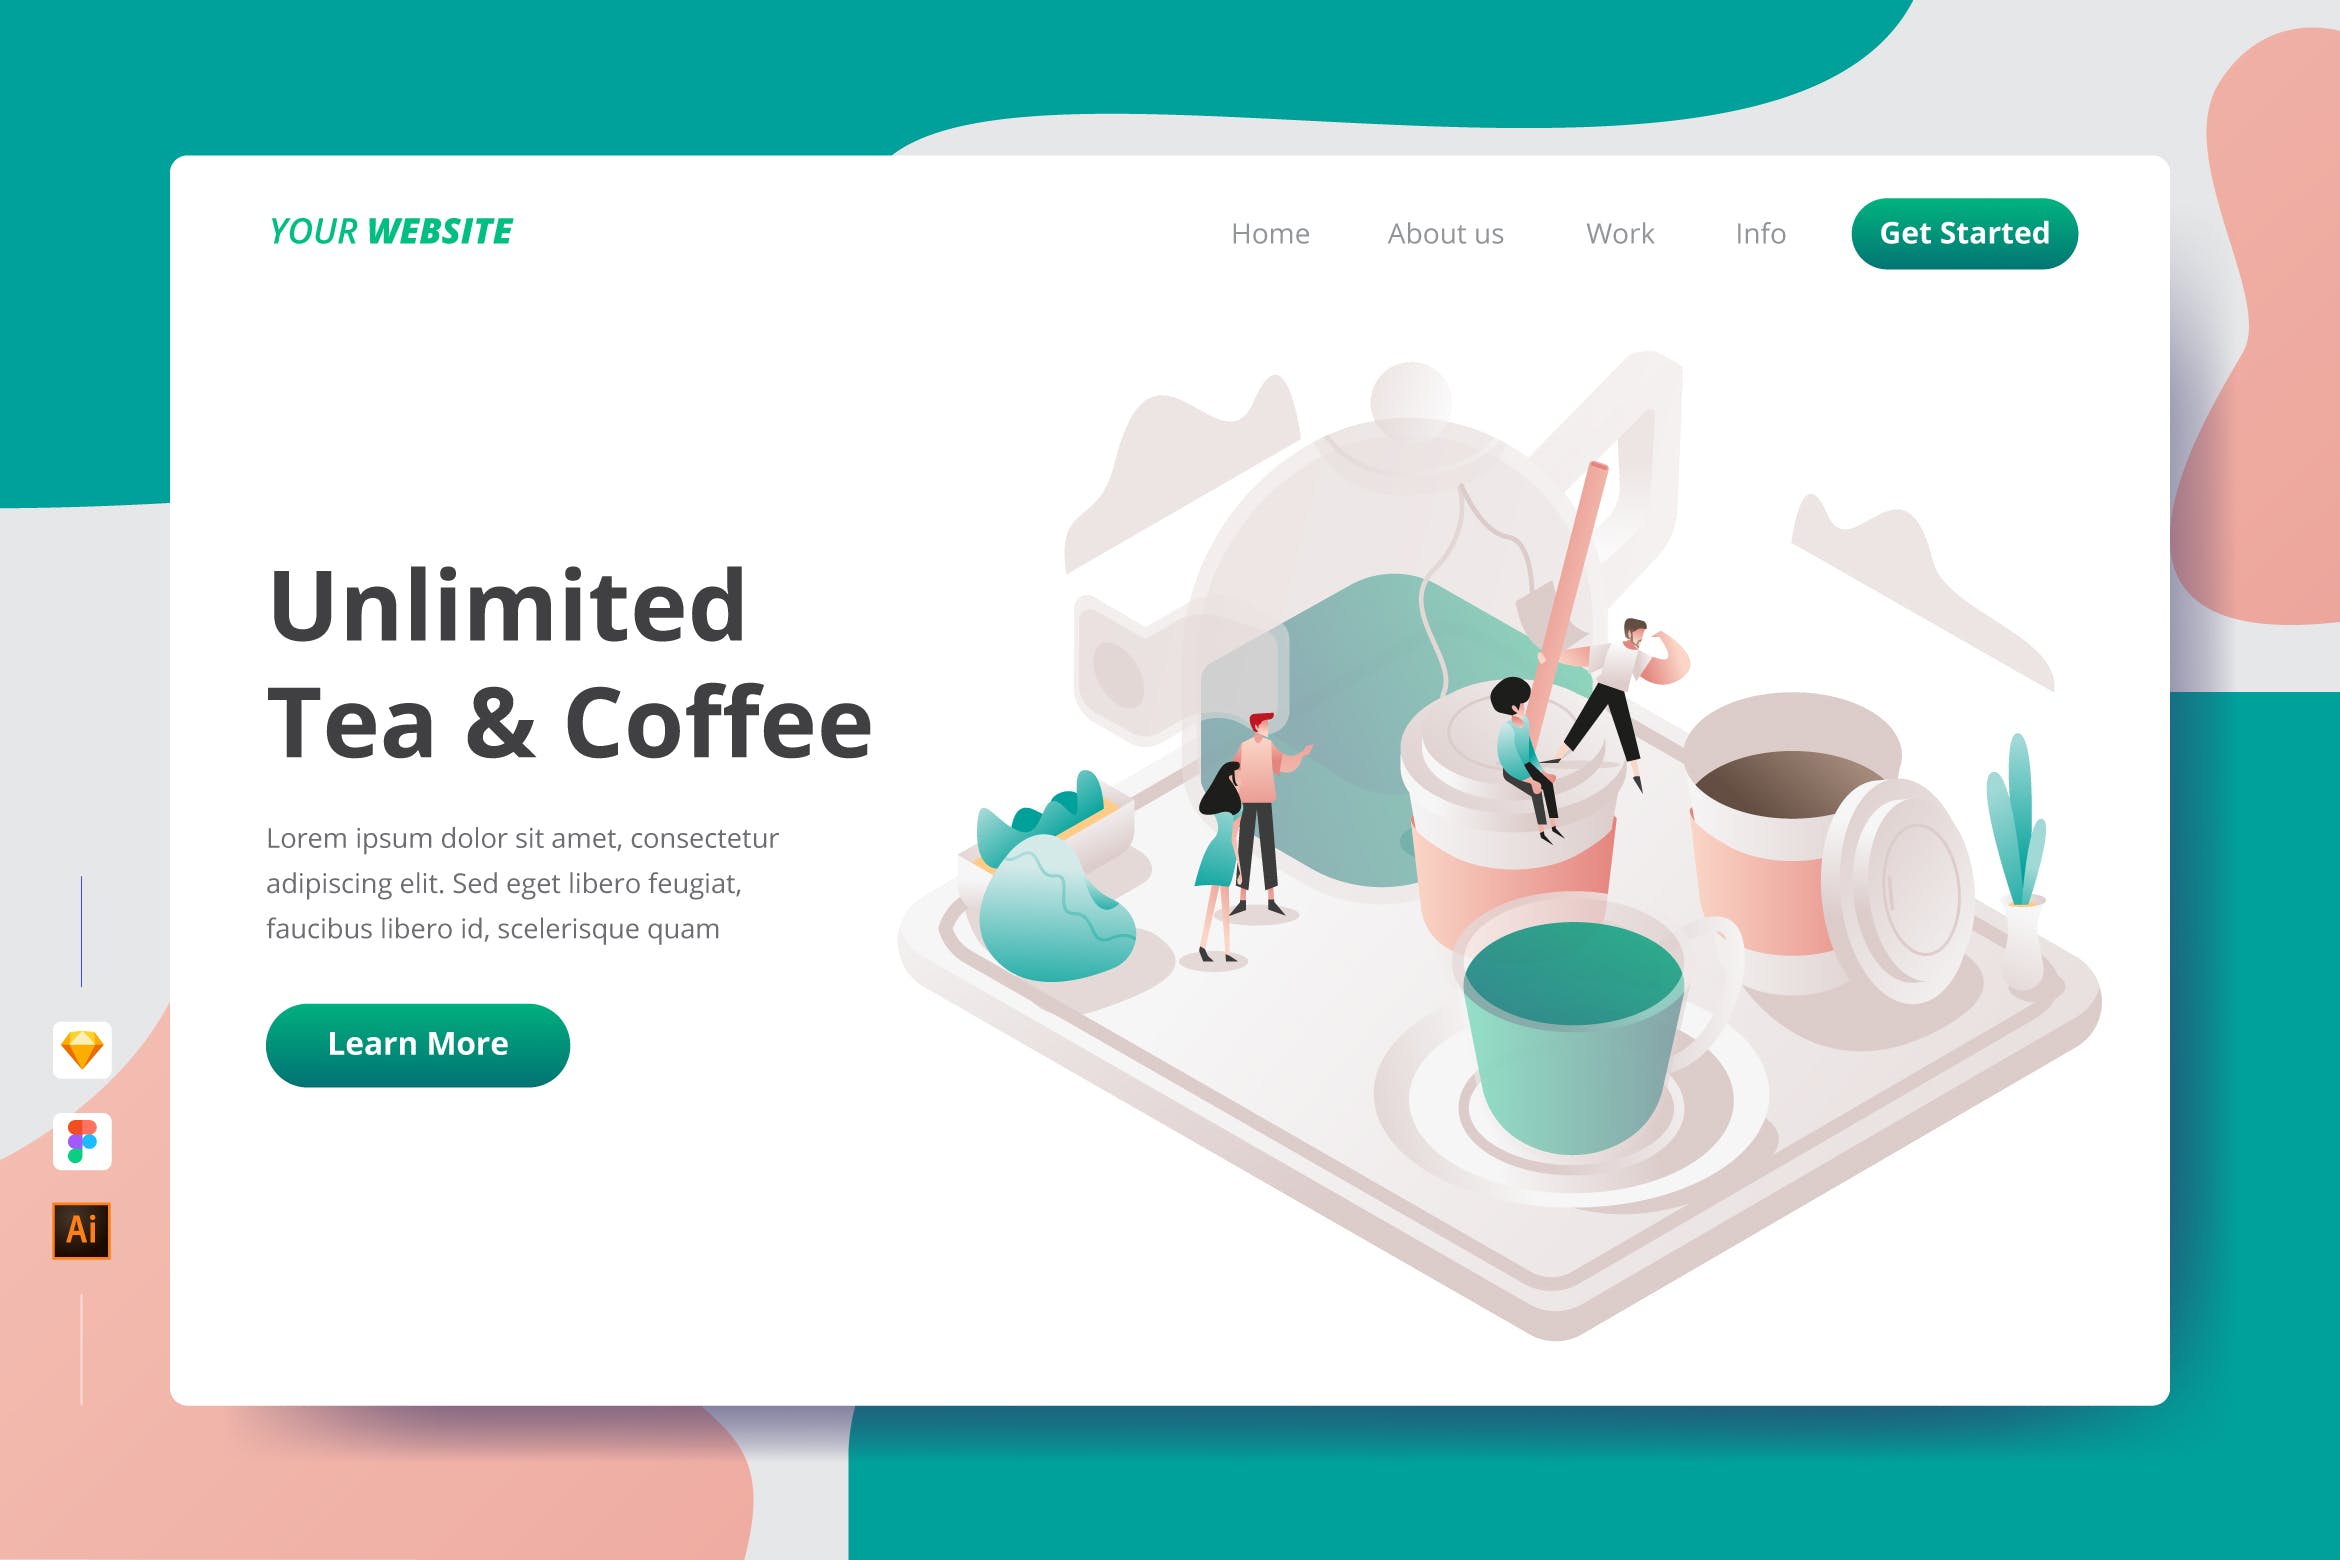 咖啡&饮茶文化主题插画网站着陆页设计第一素材精选模板 Unlimited Tea & Coffee – Landing Page插图